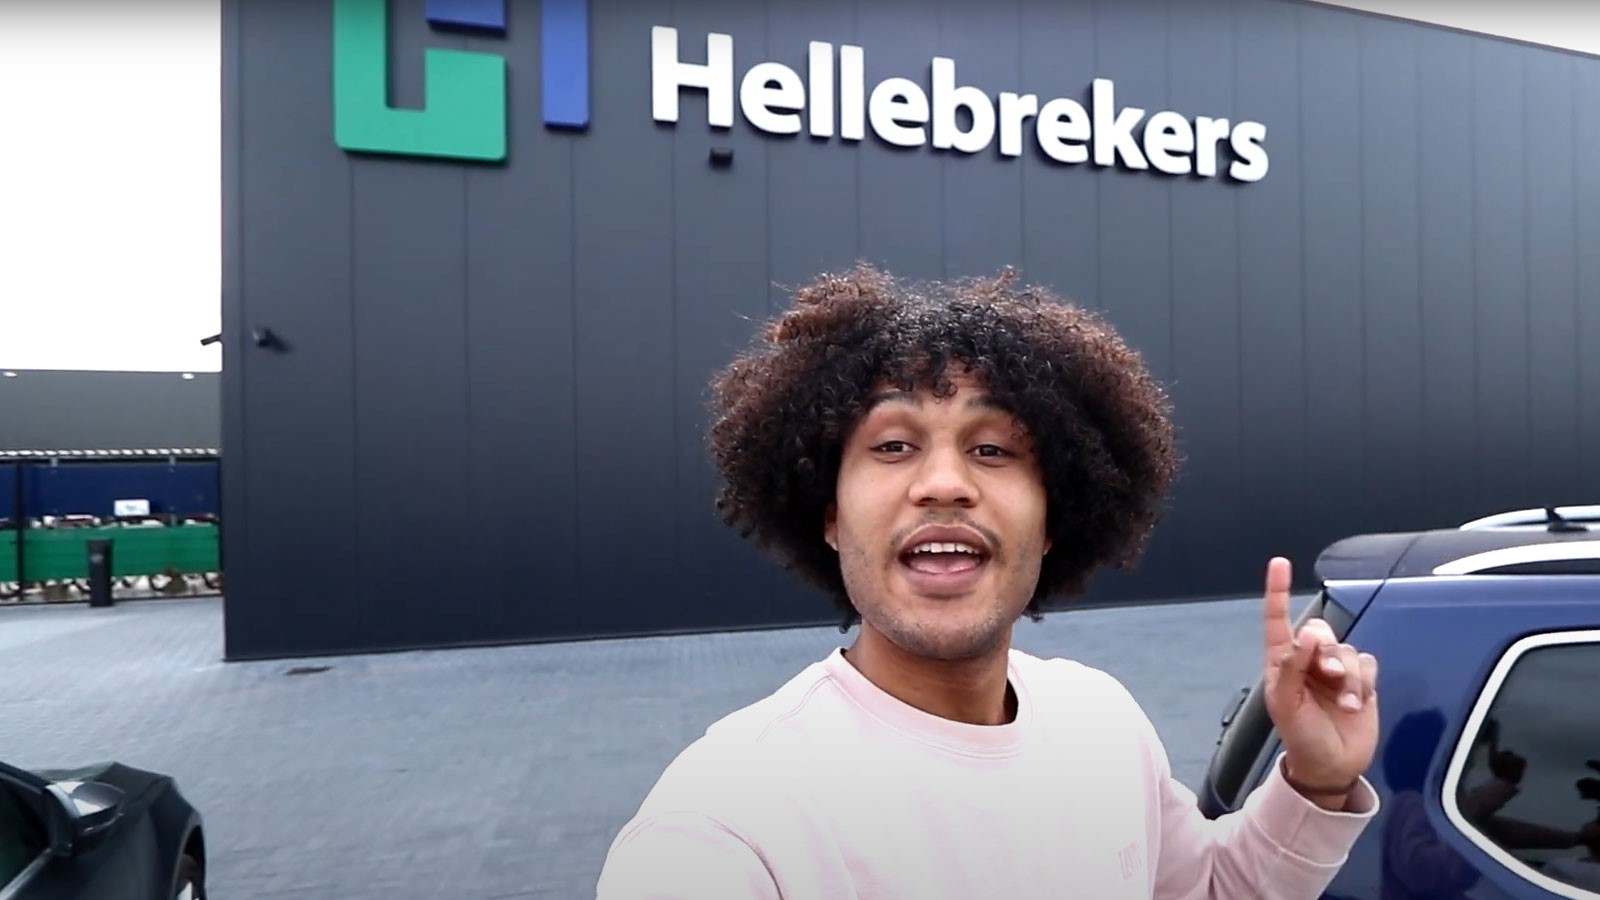 Vlogger Joshua op bezoek bij Hellebrekers